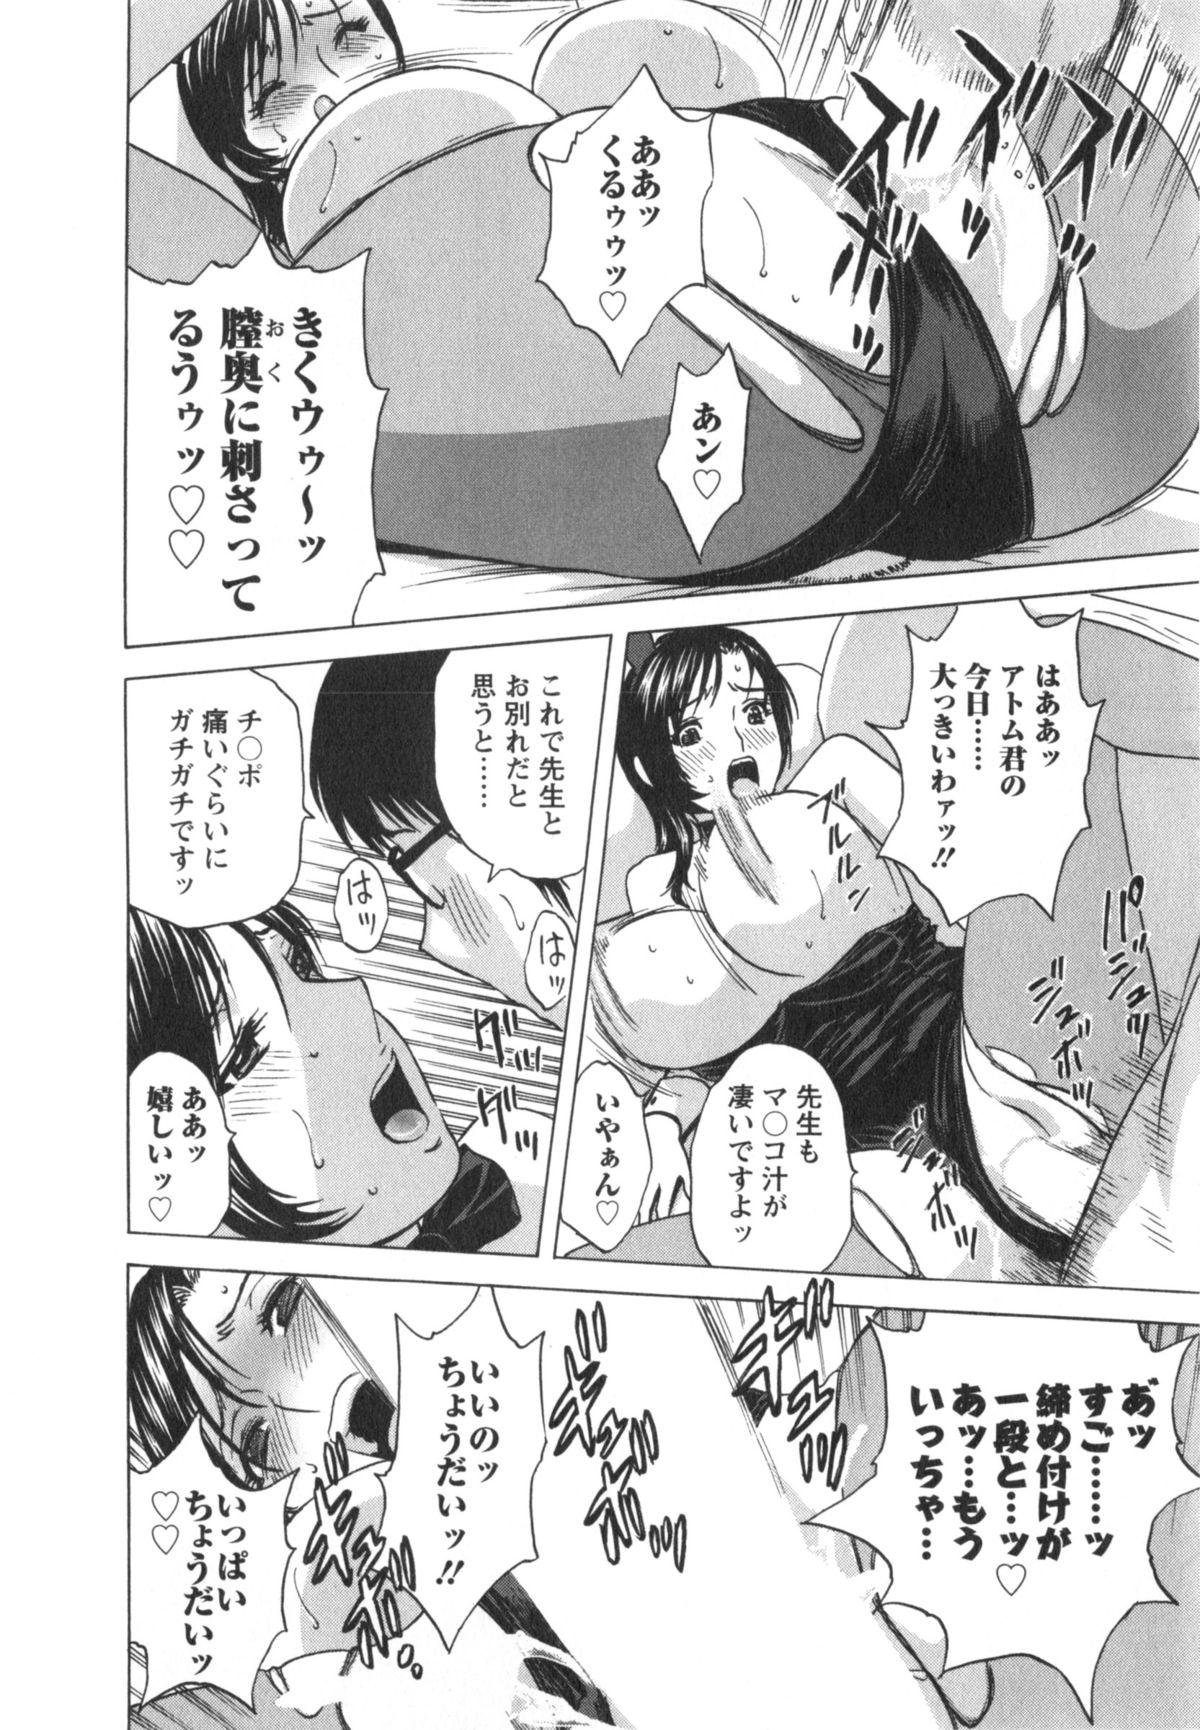 Manga no youna Hitozuma to no Hibi - Days with Married Women such as Comics. 186